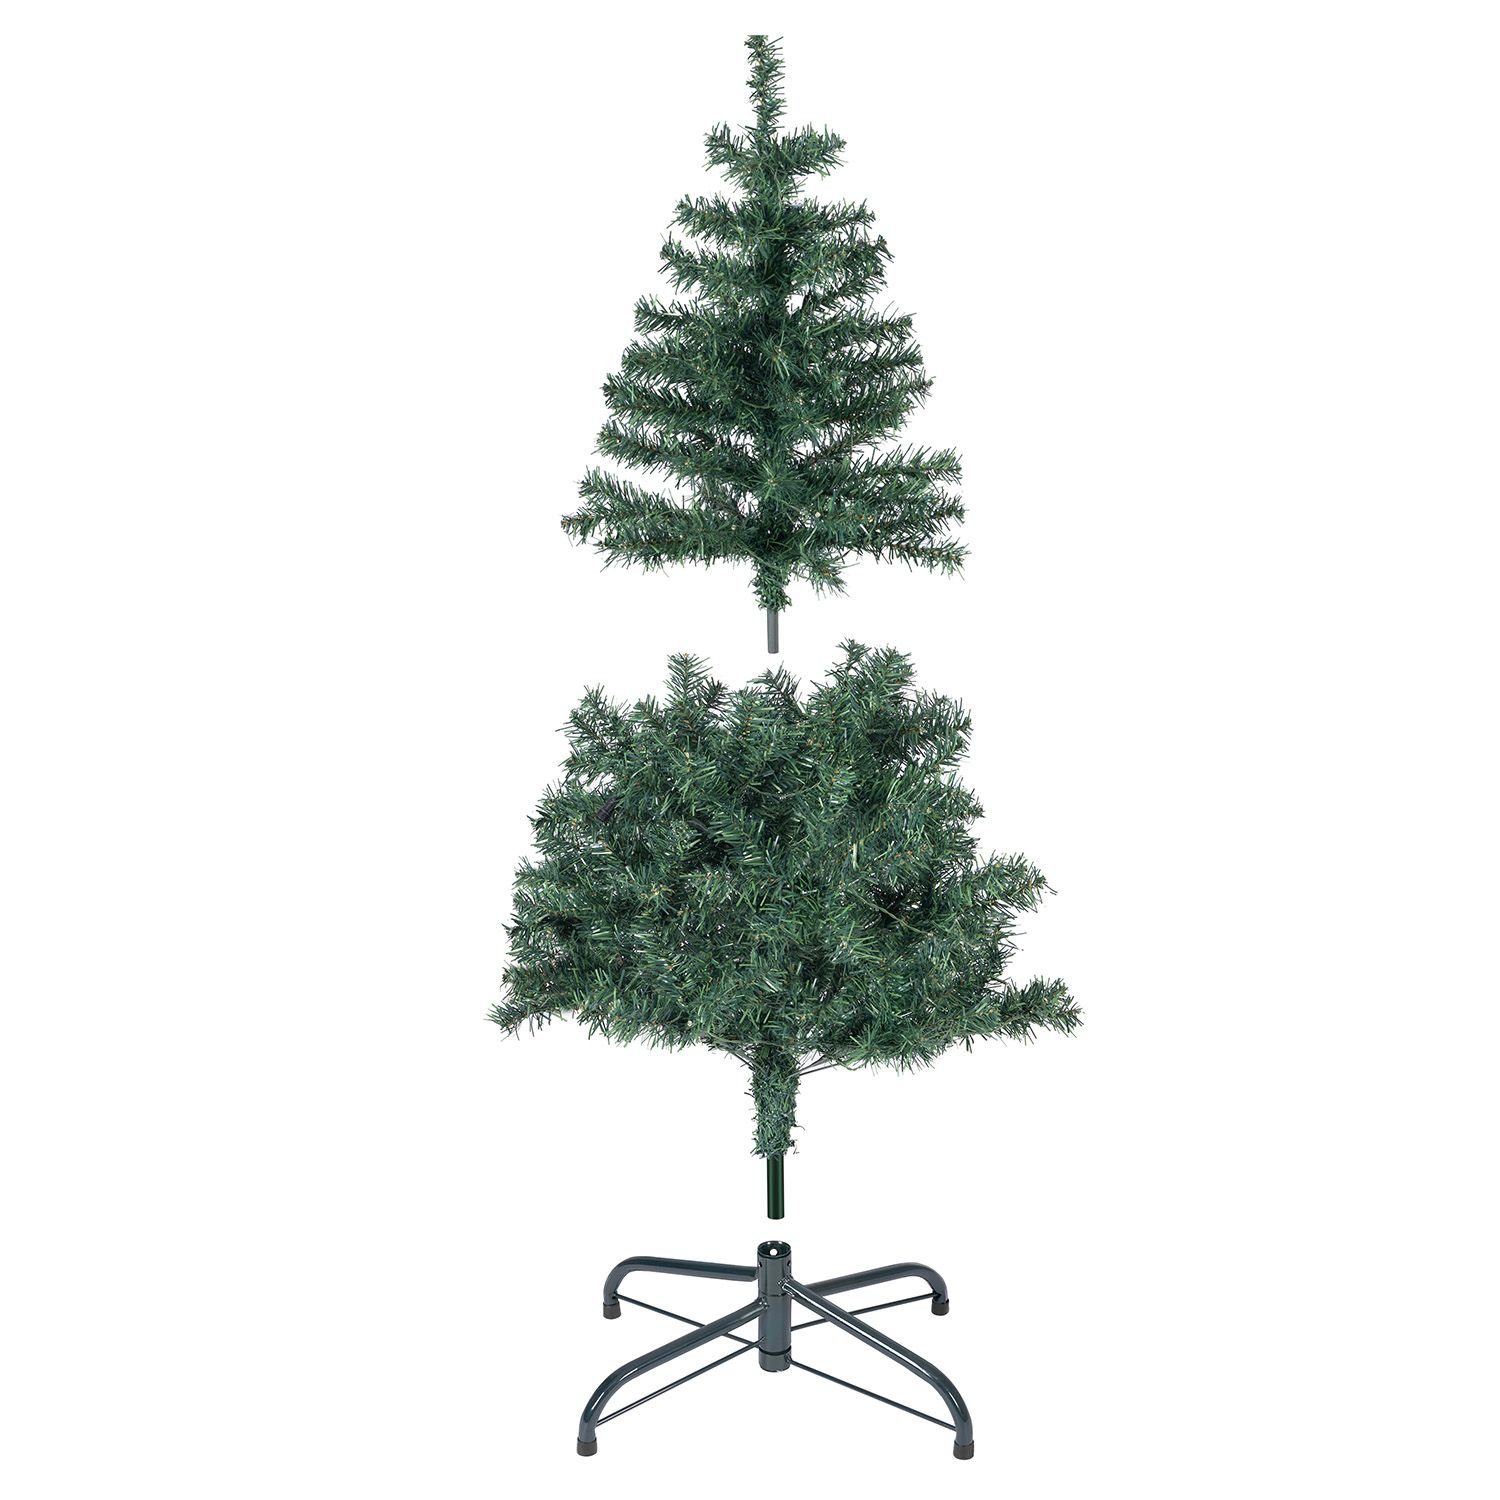 Juskys Künstlicher Weihnachtsbaum, inkl. langlebig Metall-Ständer mit Weihnachtsbaum, und LED-Lichtkette, platzsparend